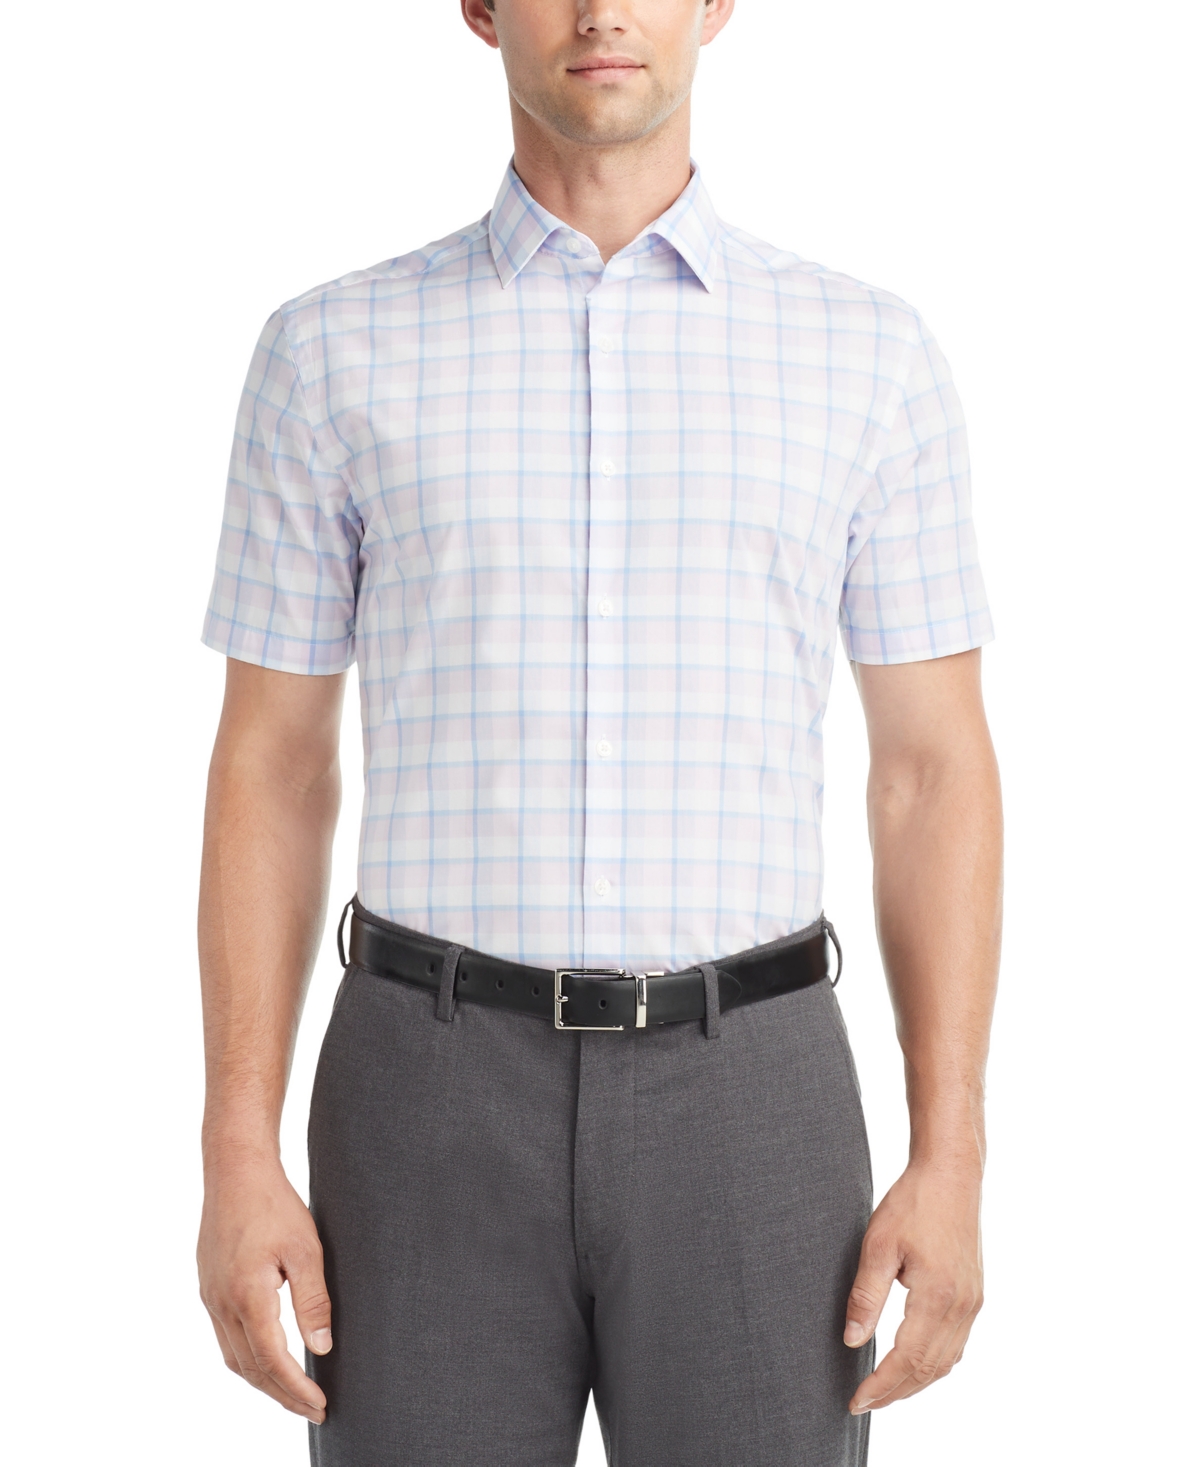 Men's Slim-Fit Flex Collar Short-Sleeve Dress Shirt - Azure Blue